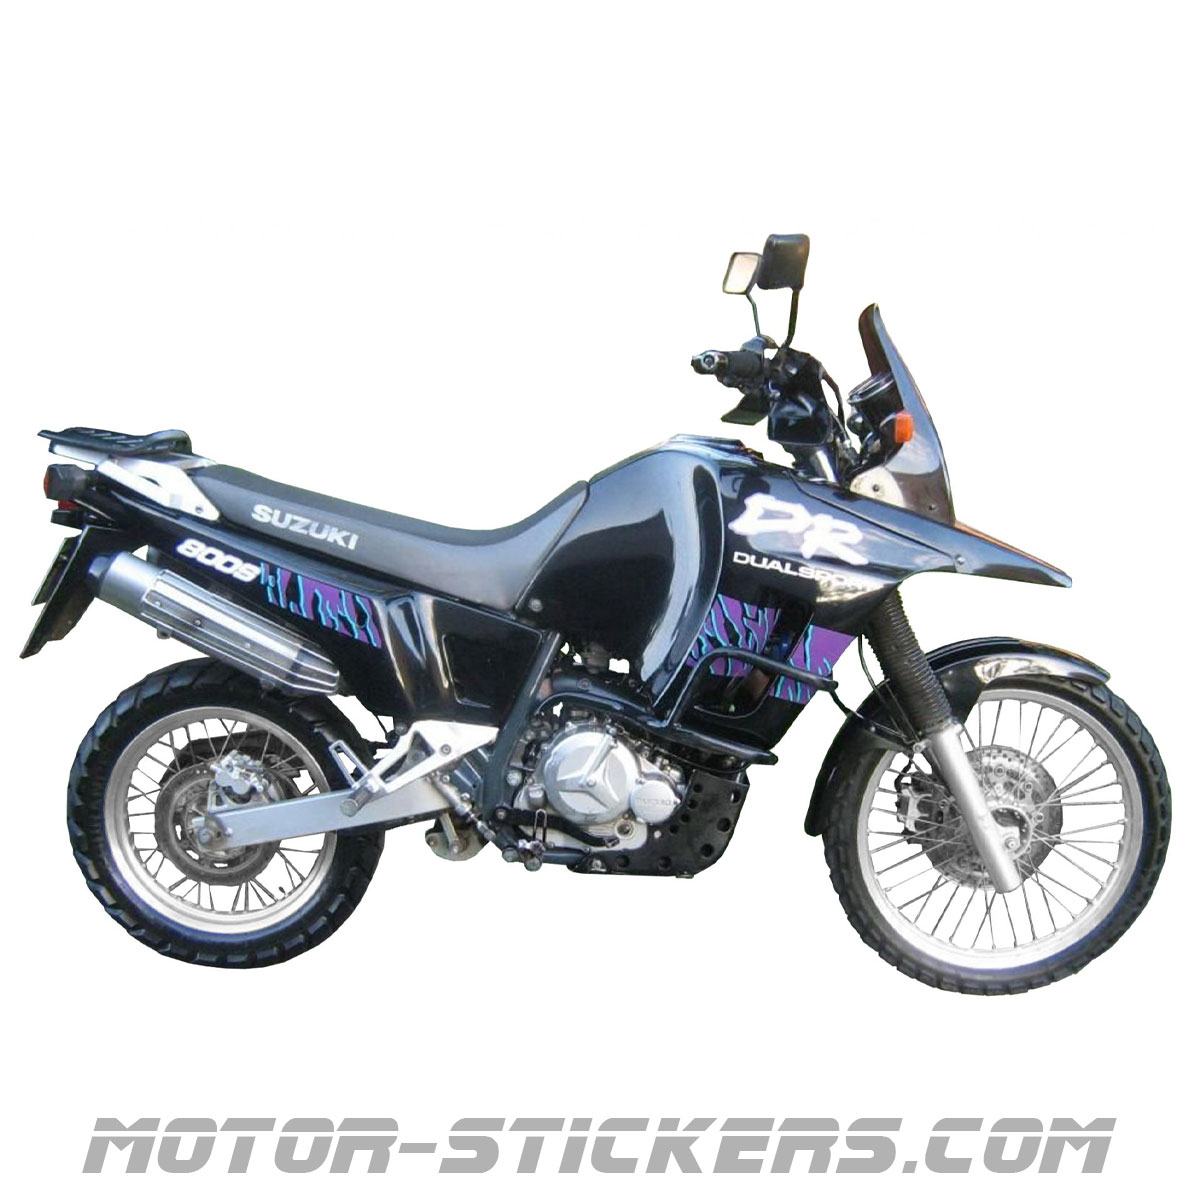 SUPERSTICKI Suzuki DR 800 S Sponsorset 118 ca 30cm Motorrad Bike Motorcycle Aufkleber Bike Auto Racing Tuning aus Hochleistungsfolie Aufkleber Autoaufkleber Tuningaufkleber Hochleistungsfol 